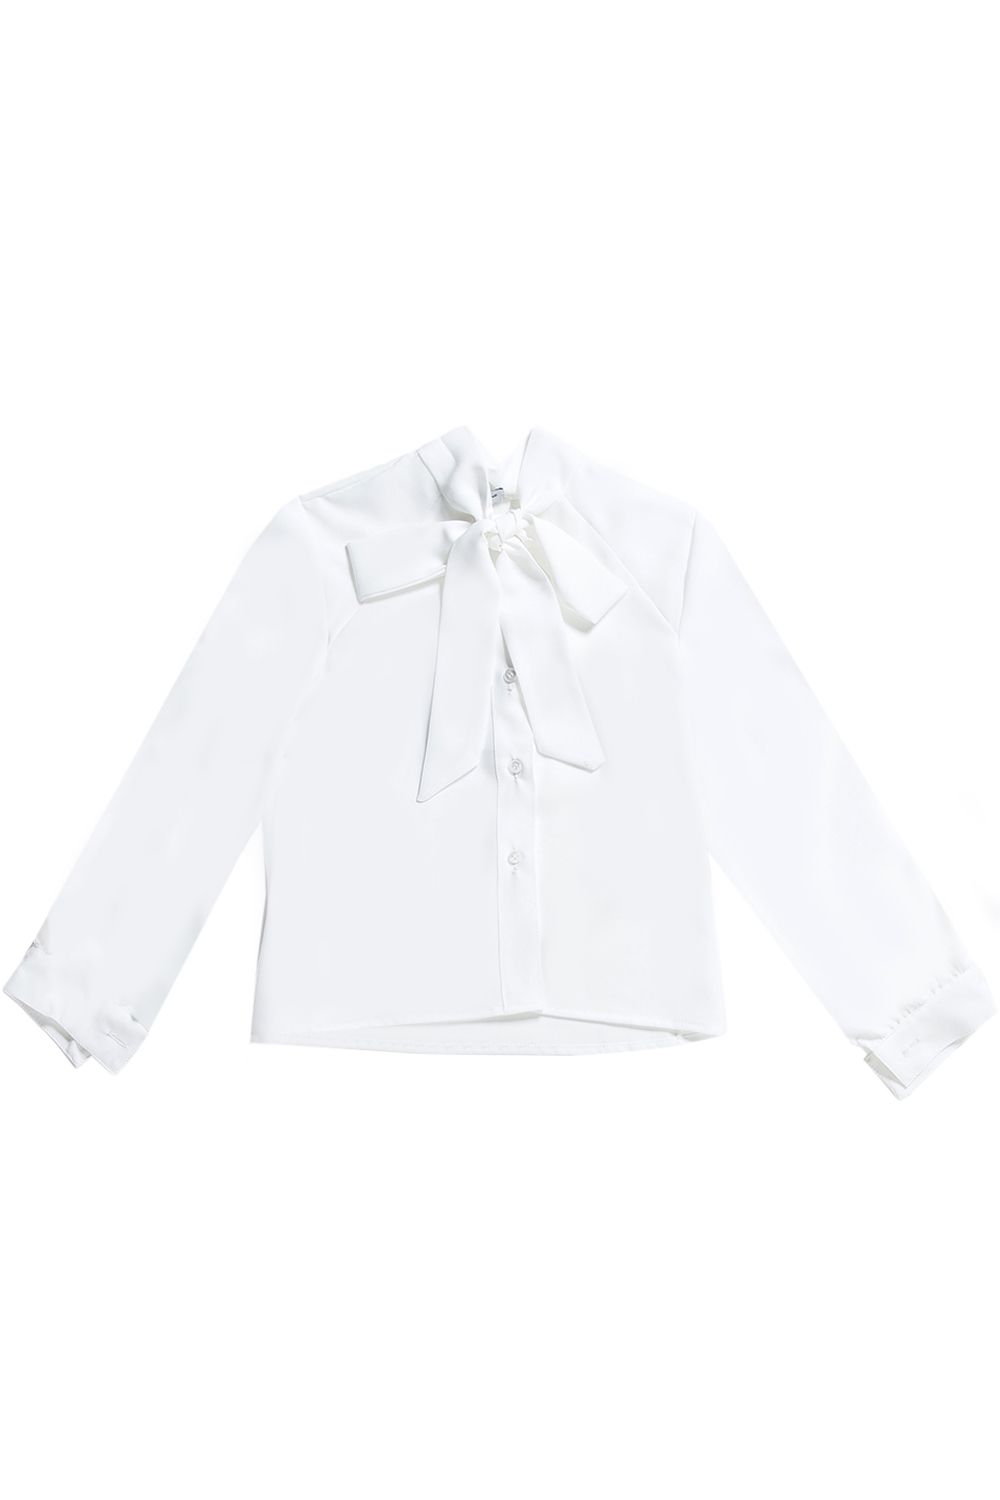 Блуза Gaialuna, размер 134, цвет белый G1787 - фото 1